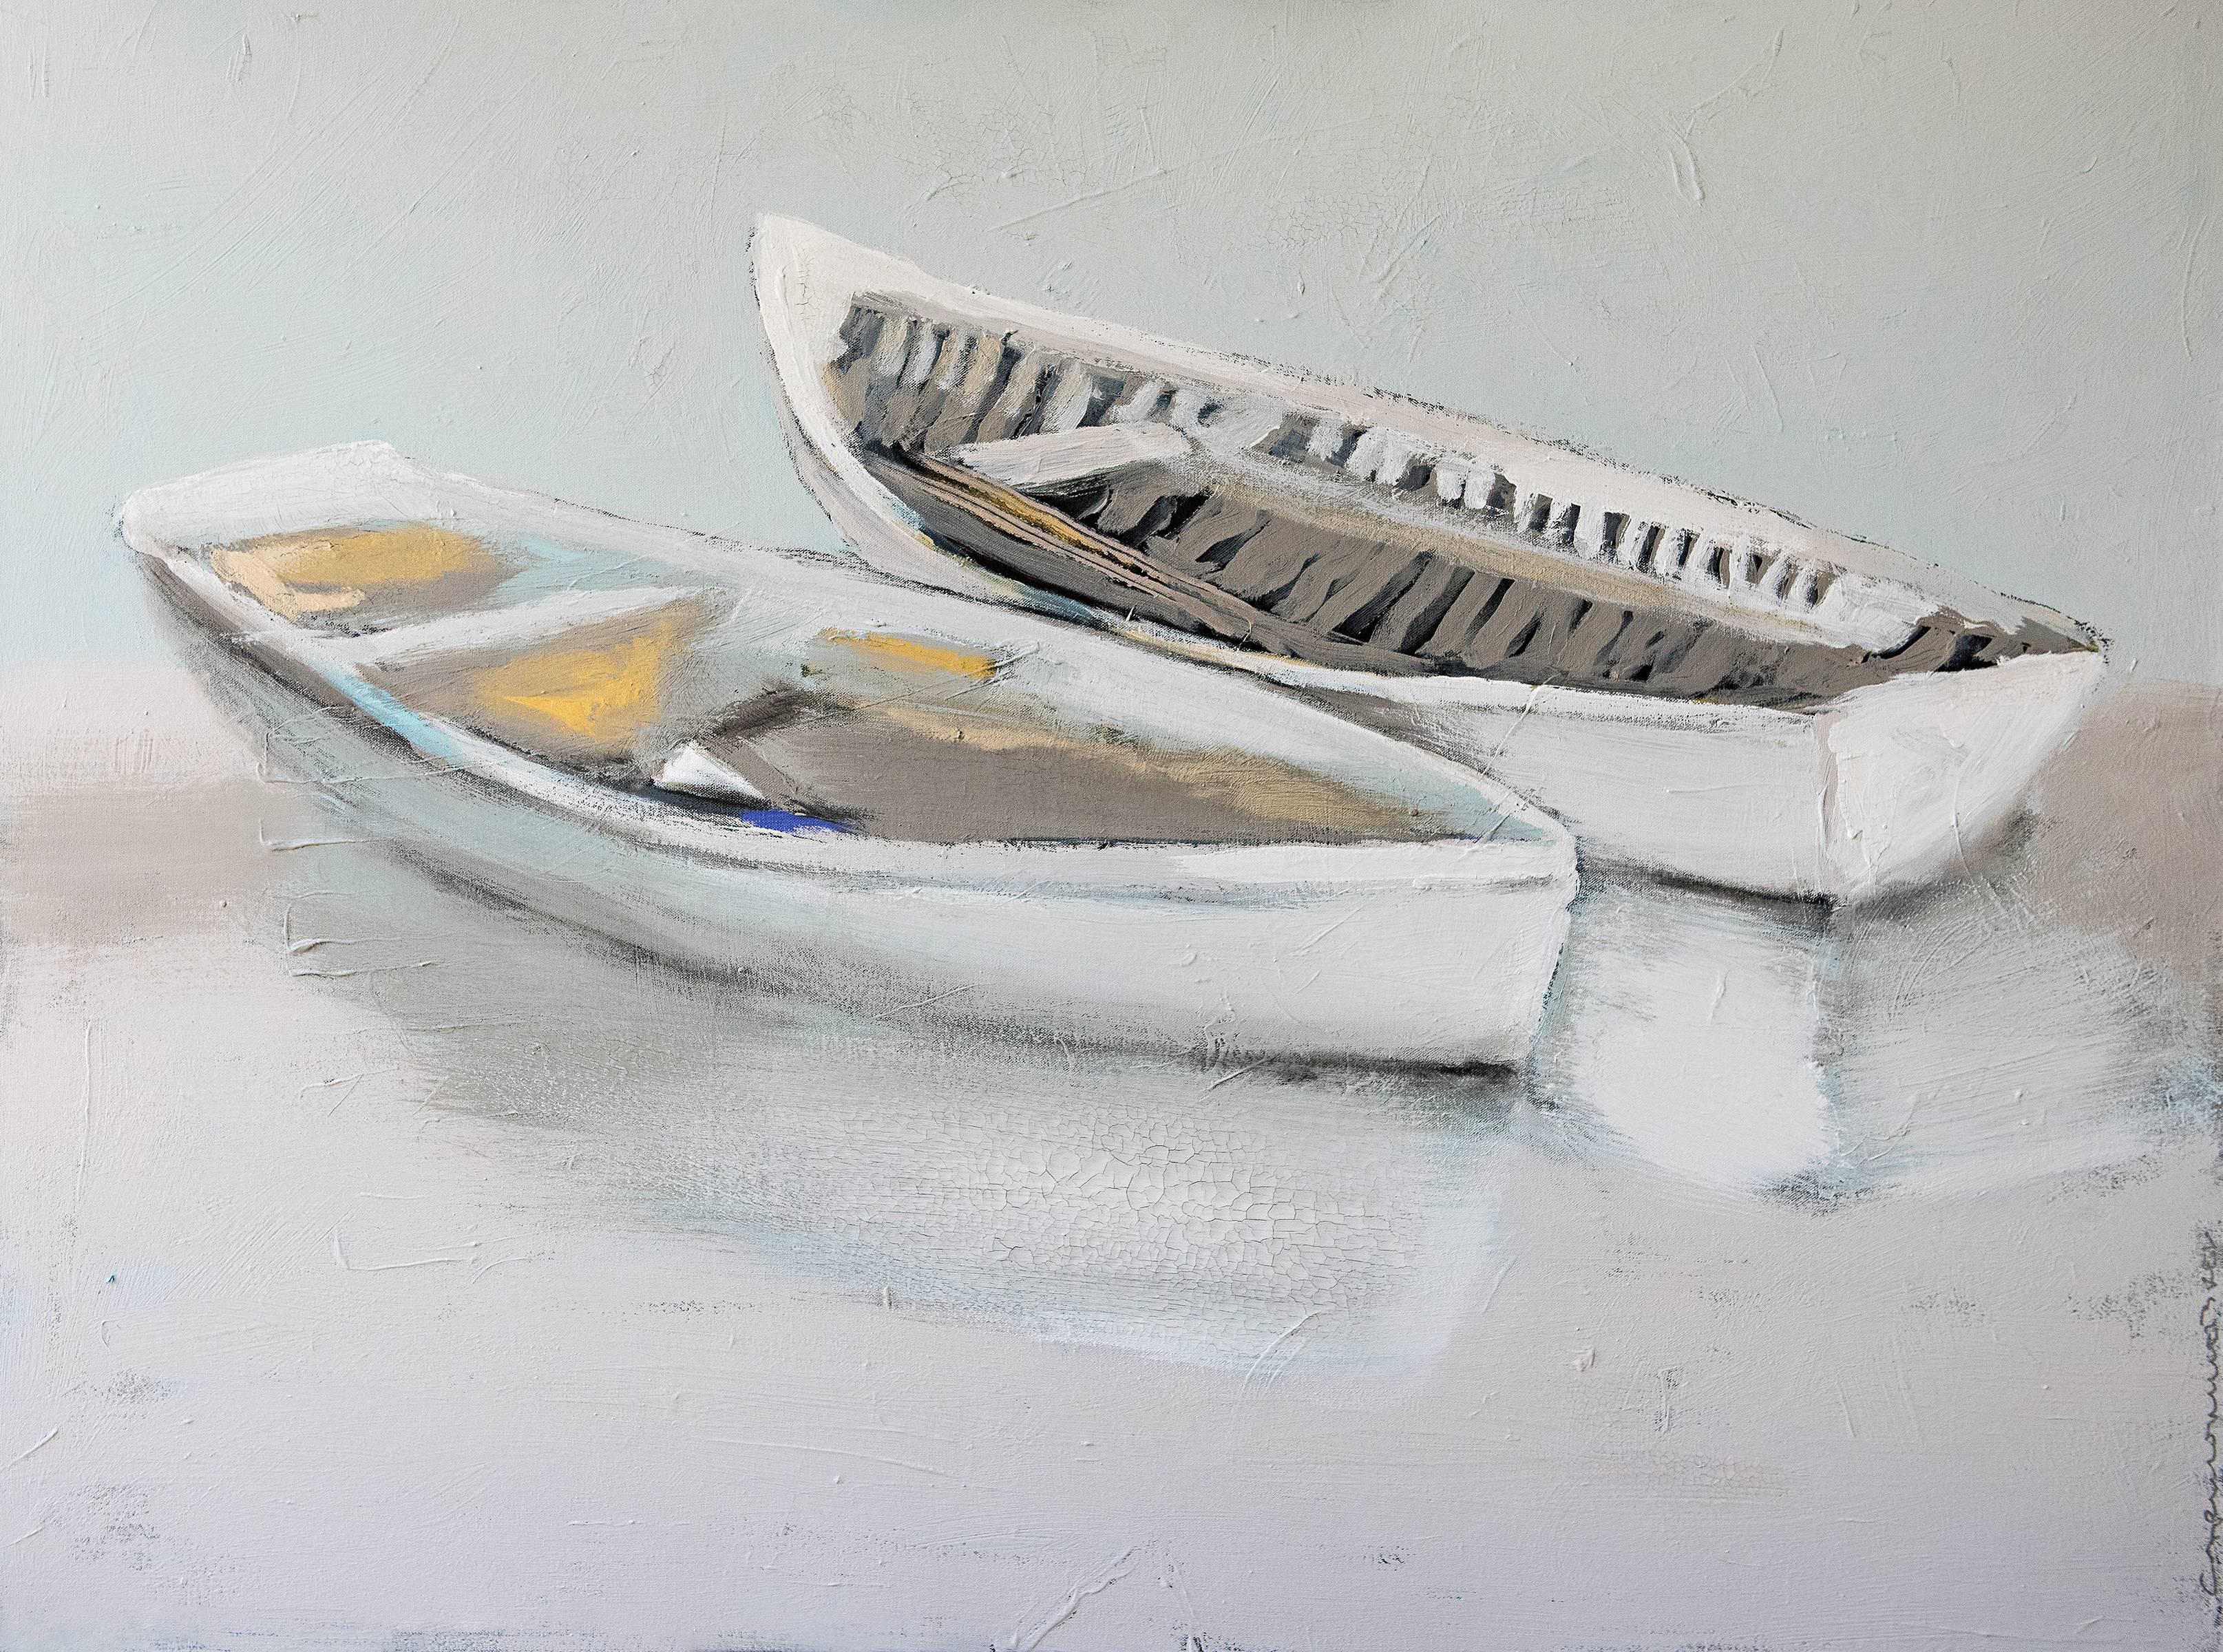 Carylon Killebrew Landscape Painting - "Wrapped Around You" Large Horizontal Boat Painting